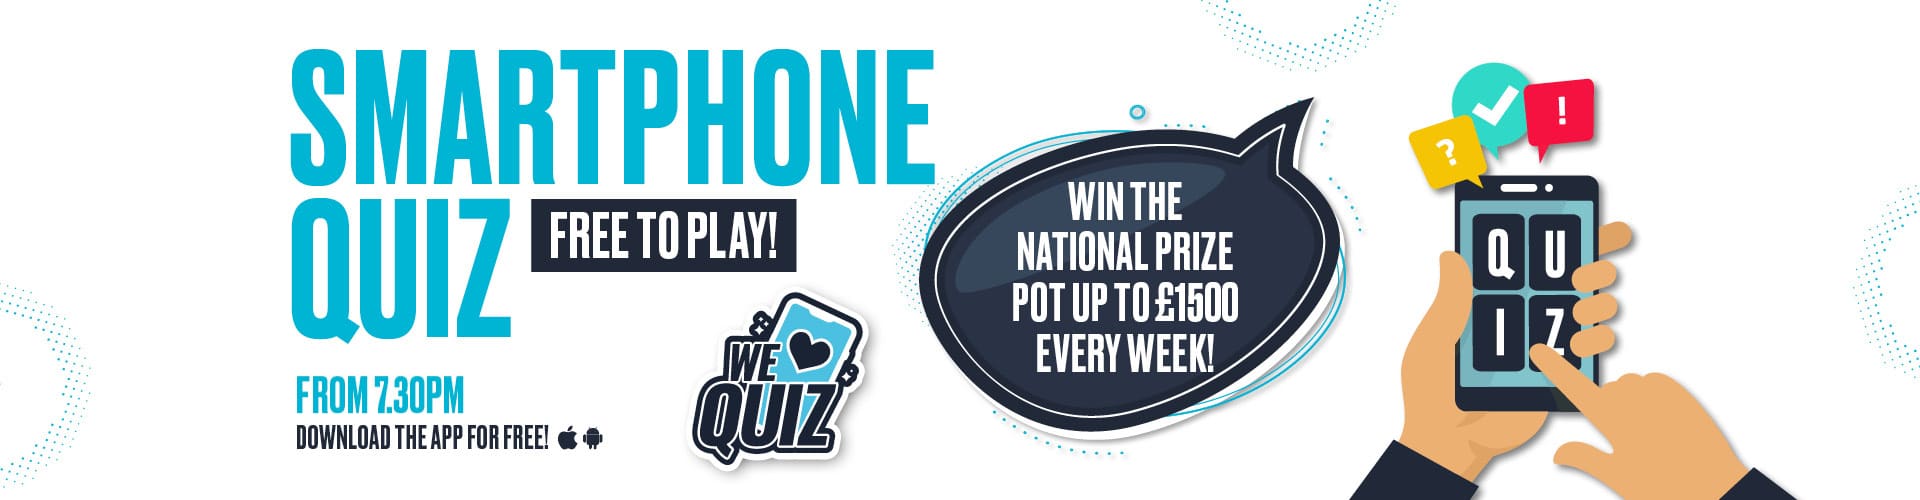 Smartphone quiz - free to play | Pub quiz near me